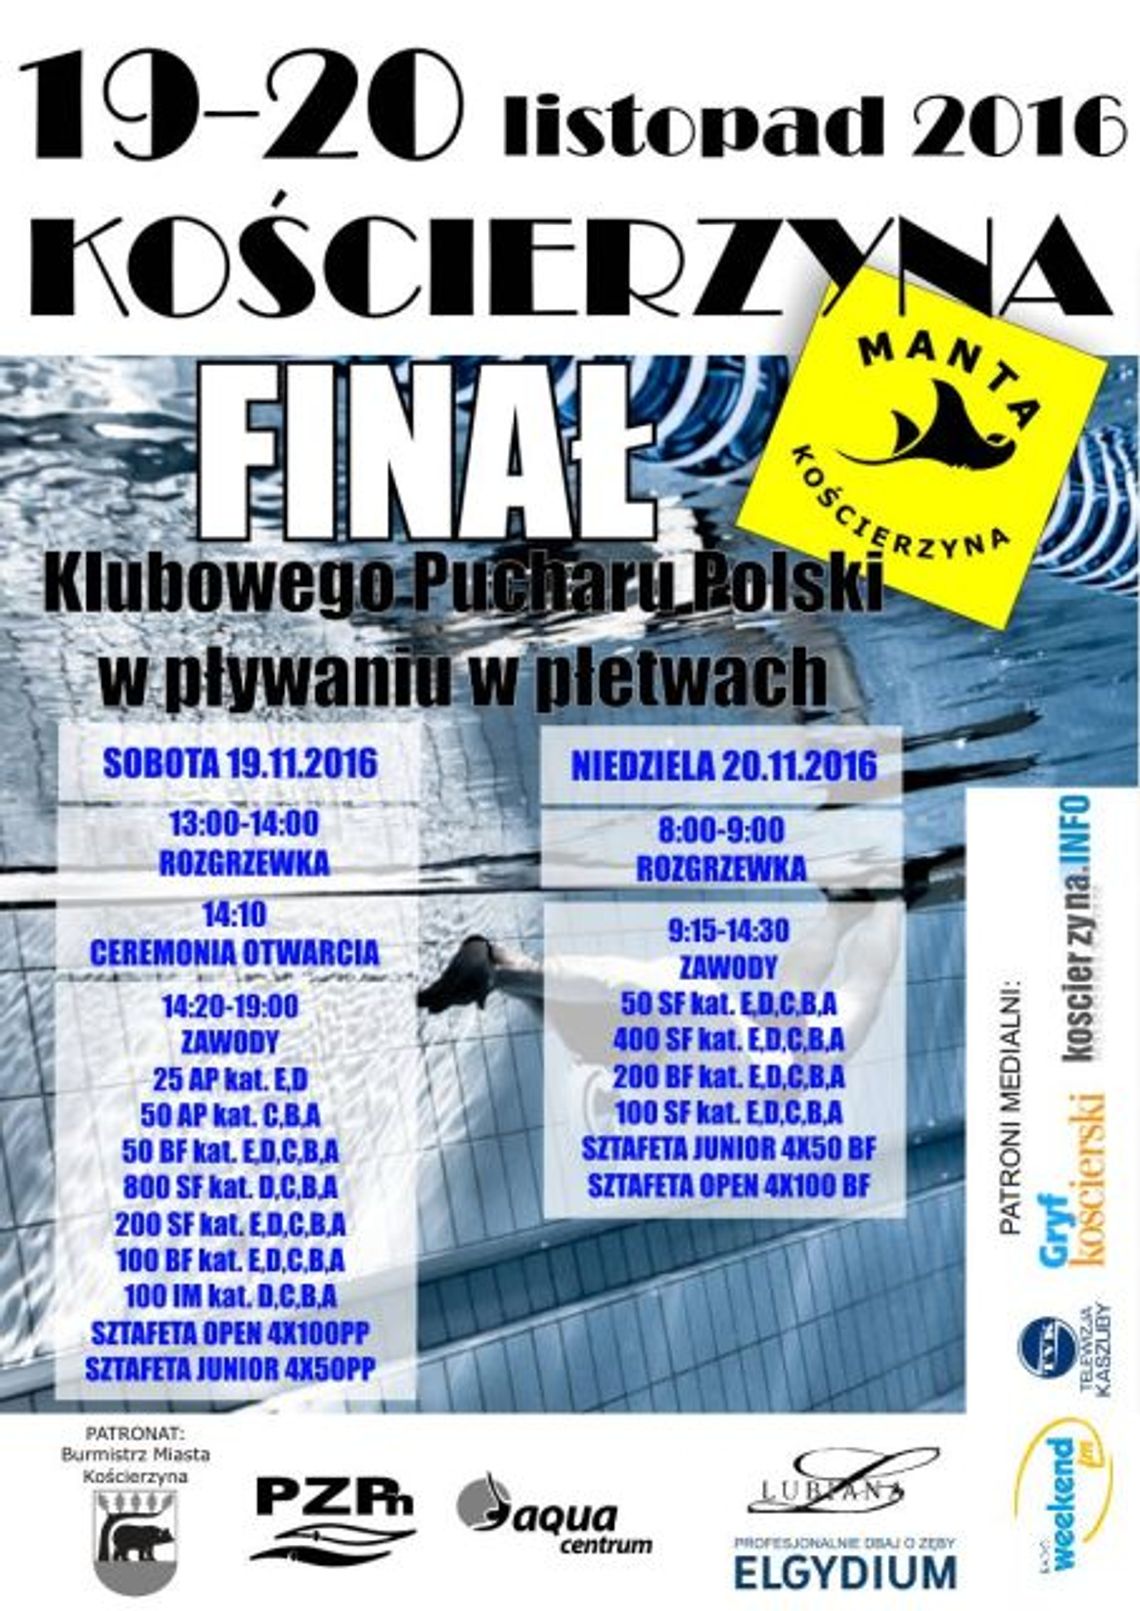 Finał Klubowego Pucharu Polski w Pływaniu w Płetwach